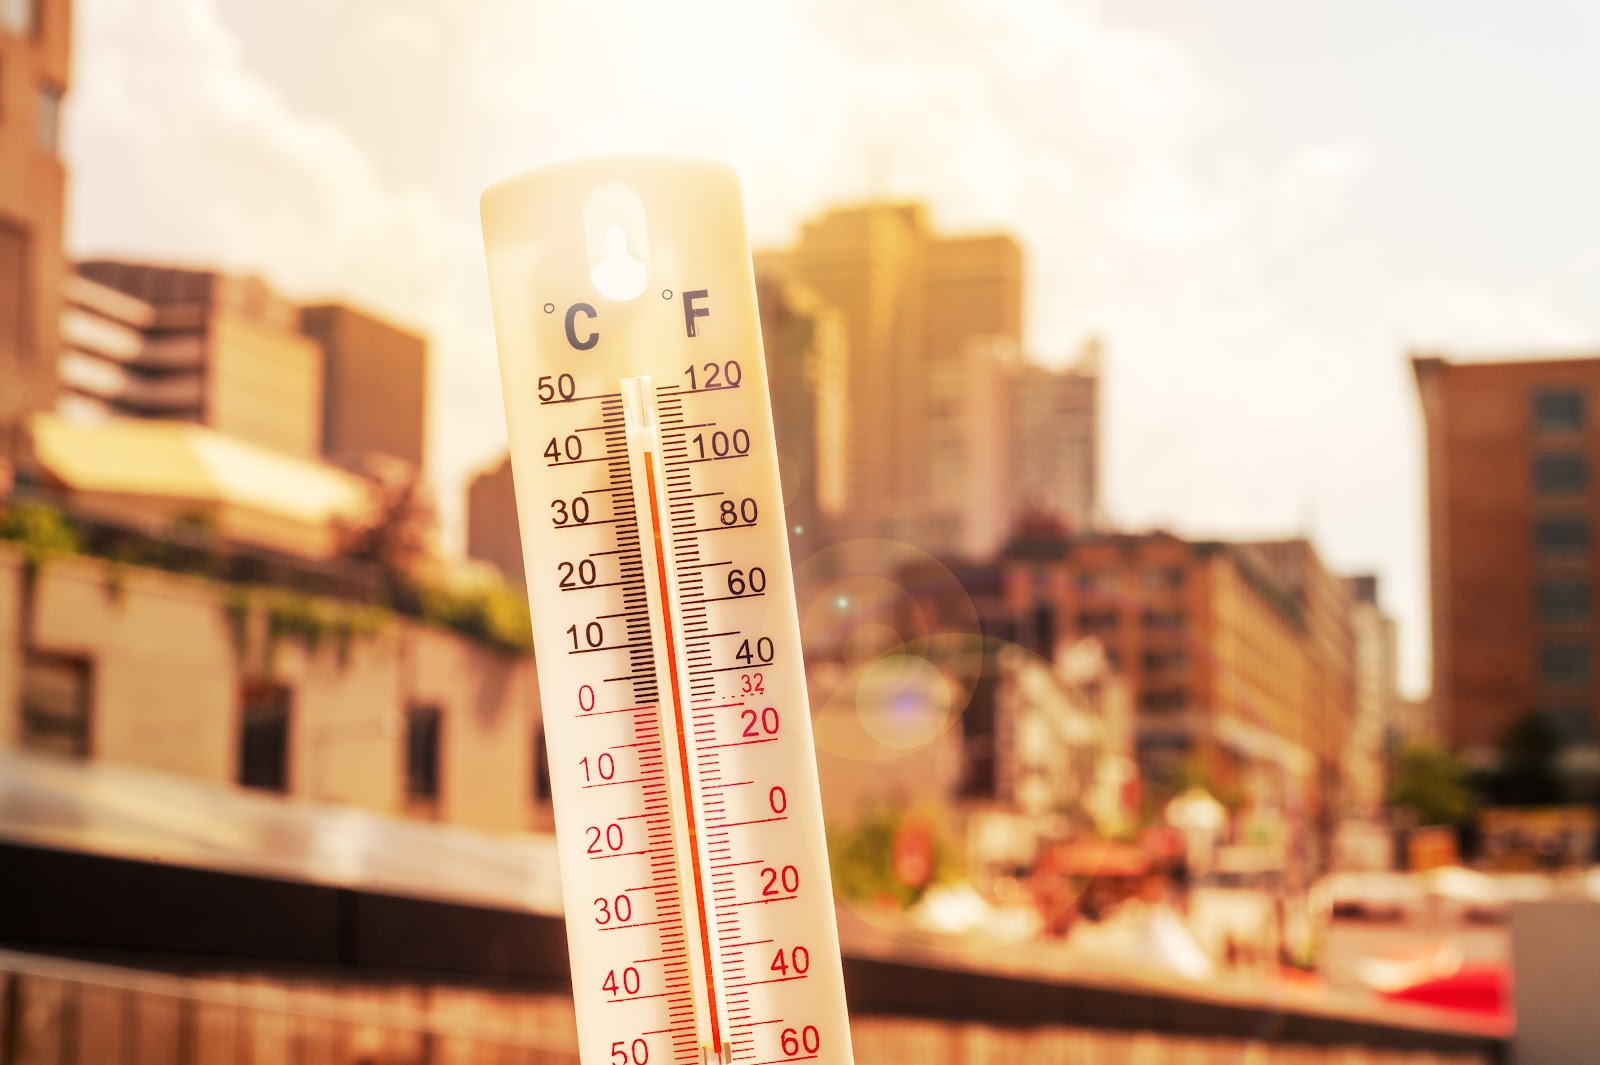 Μέτρα προφύλαξης και οδηγίες για την αντιμετώπιση επιπτώσεων από υψηλές θερμοκρασίες και καύσωνα